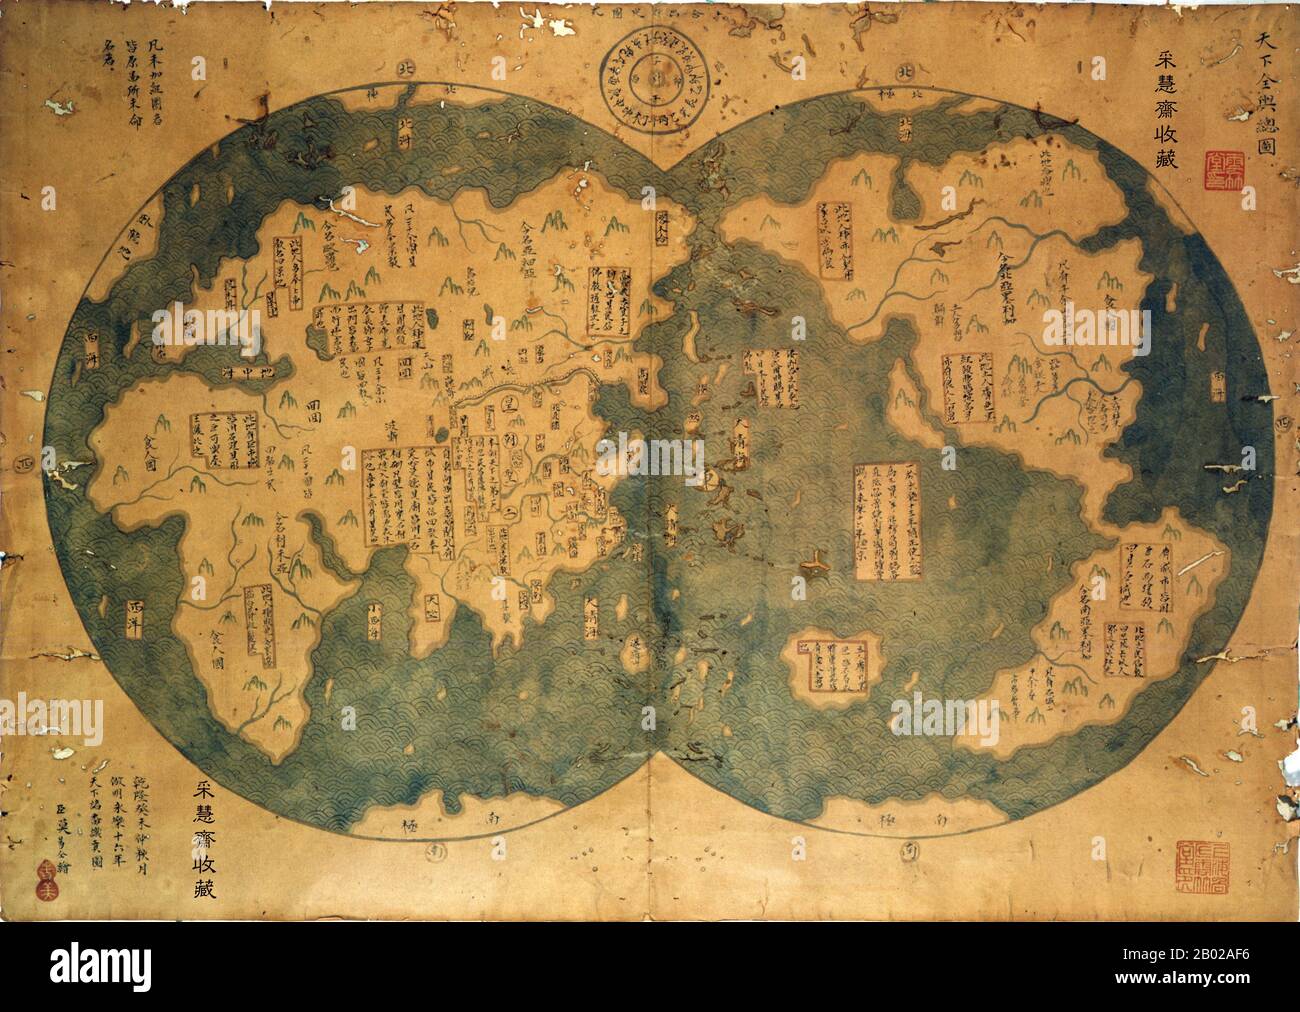 La carte Mo Yi Tong ou « Zheng He Map » a été achetée chez un concessionnaire de Shanghai en 2001 par un avocat chinois, Liu Gang, pour 500 dollars US. Malgré les affirmations initiales selon lesquelles la carte était basée sur une carte antérieure de 1418 dessinée après les observations de Zheng He, la carte de Ma Yi Tong a été généralement discrédité comme faux du XVIIIe siècle. Cette analyse est basée sur l'utilisation de plusieurs caractères chinois modernes, ainsi que sur la cartographie étendue de l'Australie, de l'Amérique du Nord et même de l'Antartica, ainsi que sur la représentation de la Californie comme une île qui semble avoir été copiée à partir de cartographes français du XVIIe siècle. F Banque D'Images